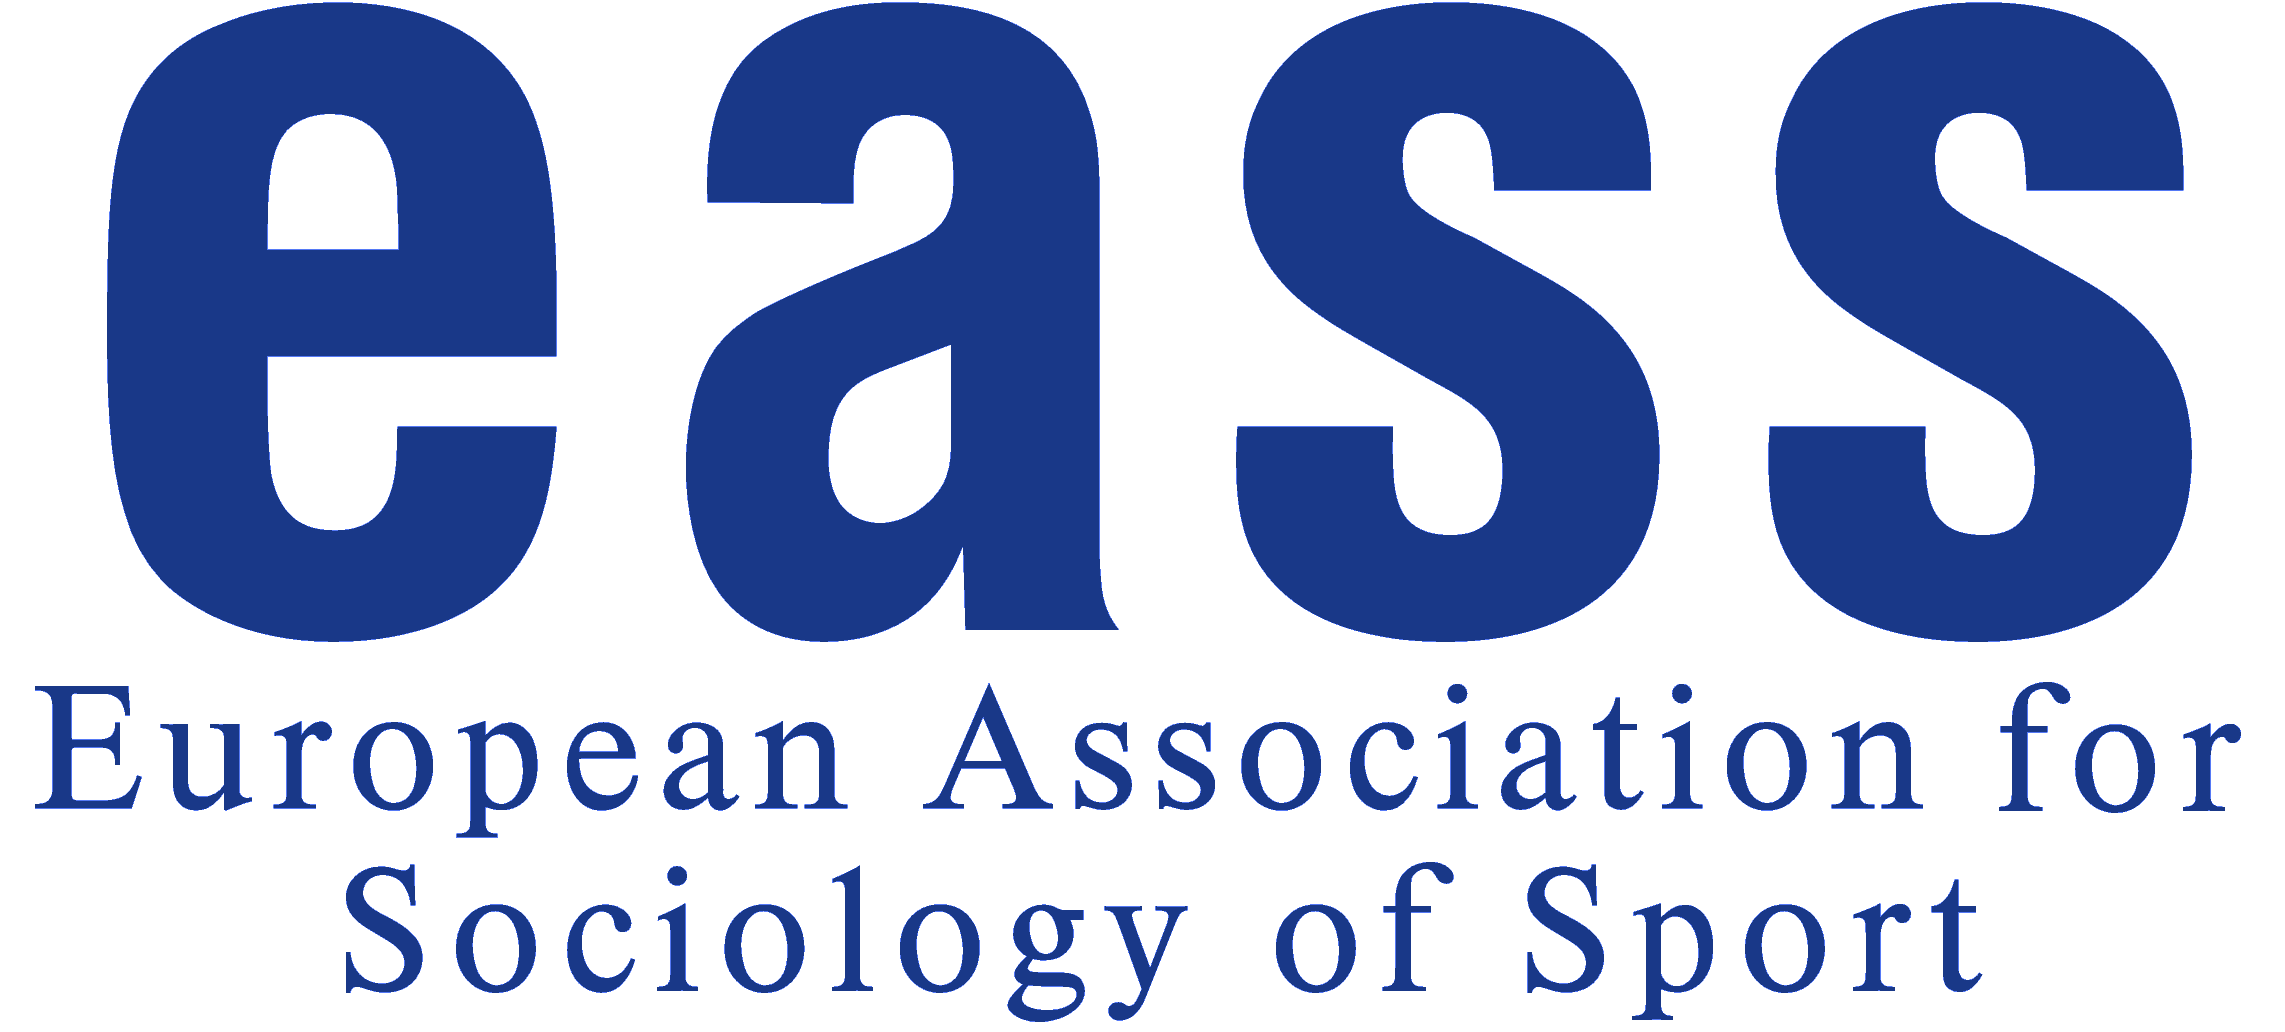 logo for European Association for Sociology of Sport